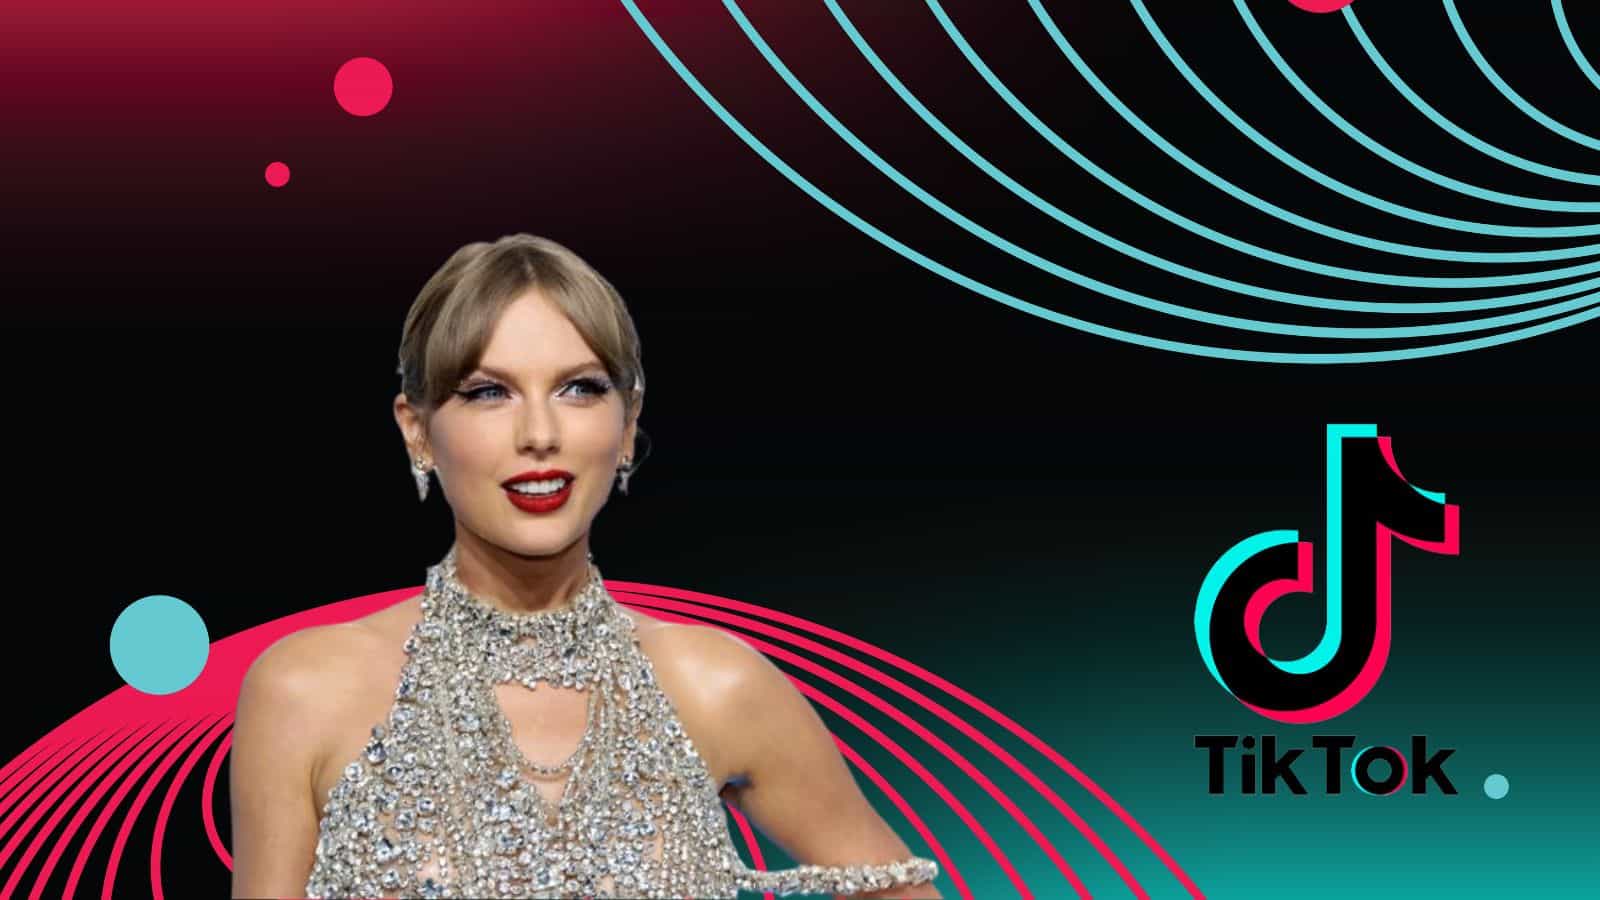 Taylor Swift e il probabile accordo con TikTok